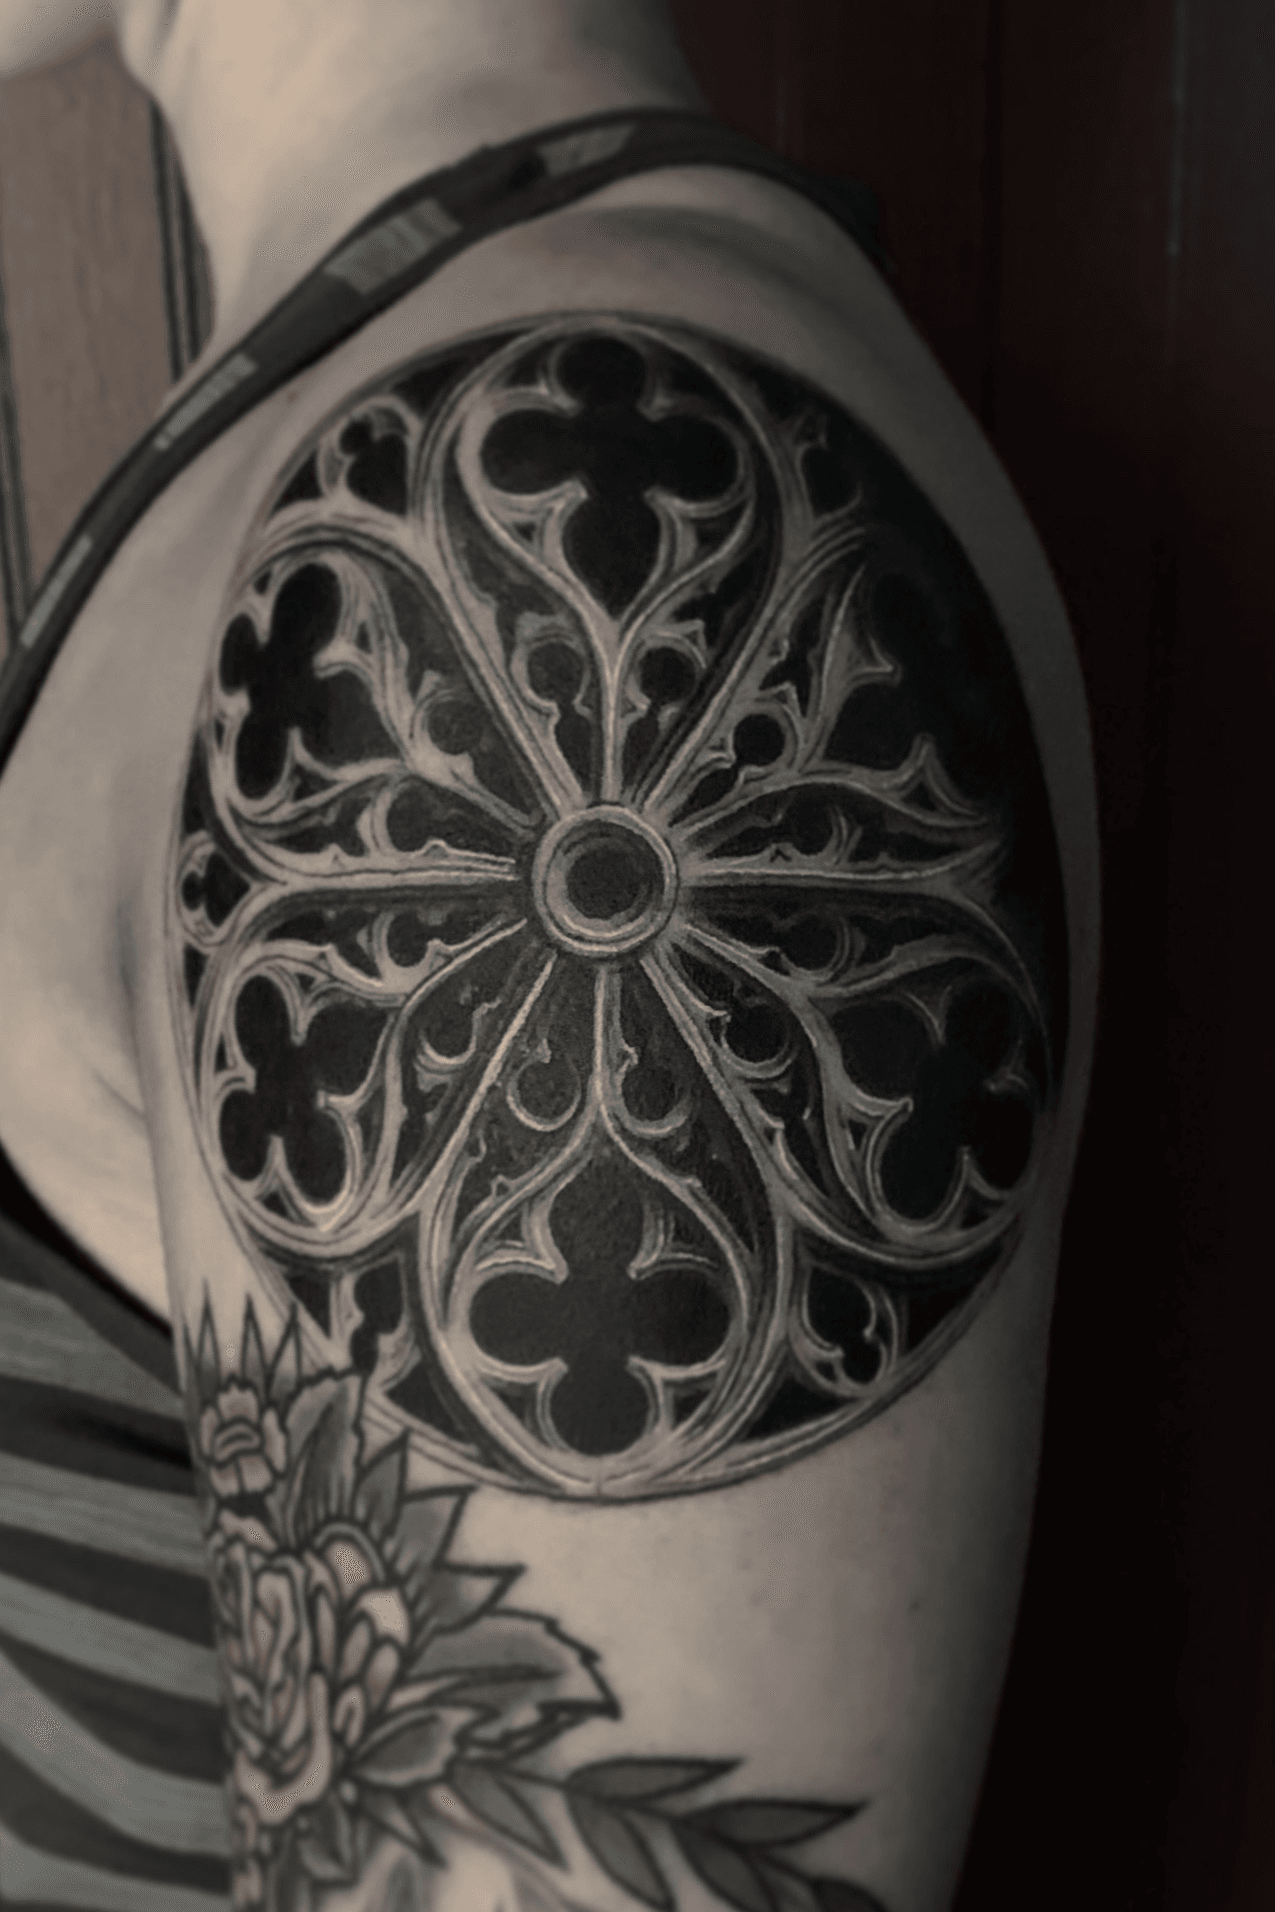 Cathedral skull window tattoo sleeve  Tattoos Back tattoo Sleeve tattoos